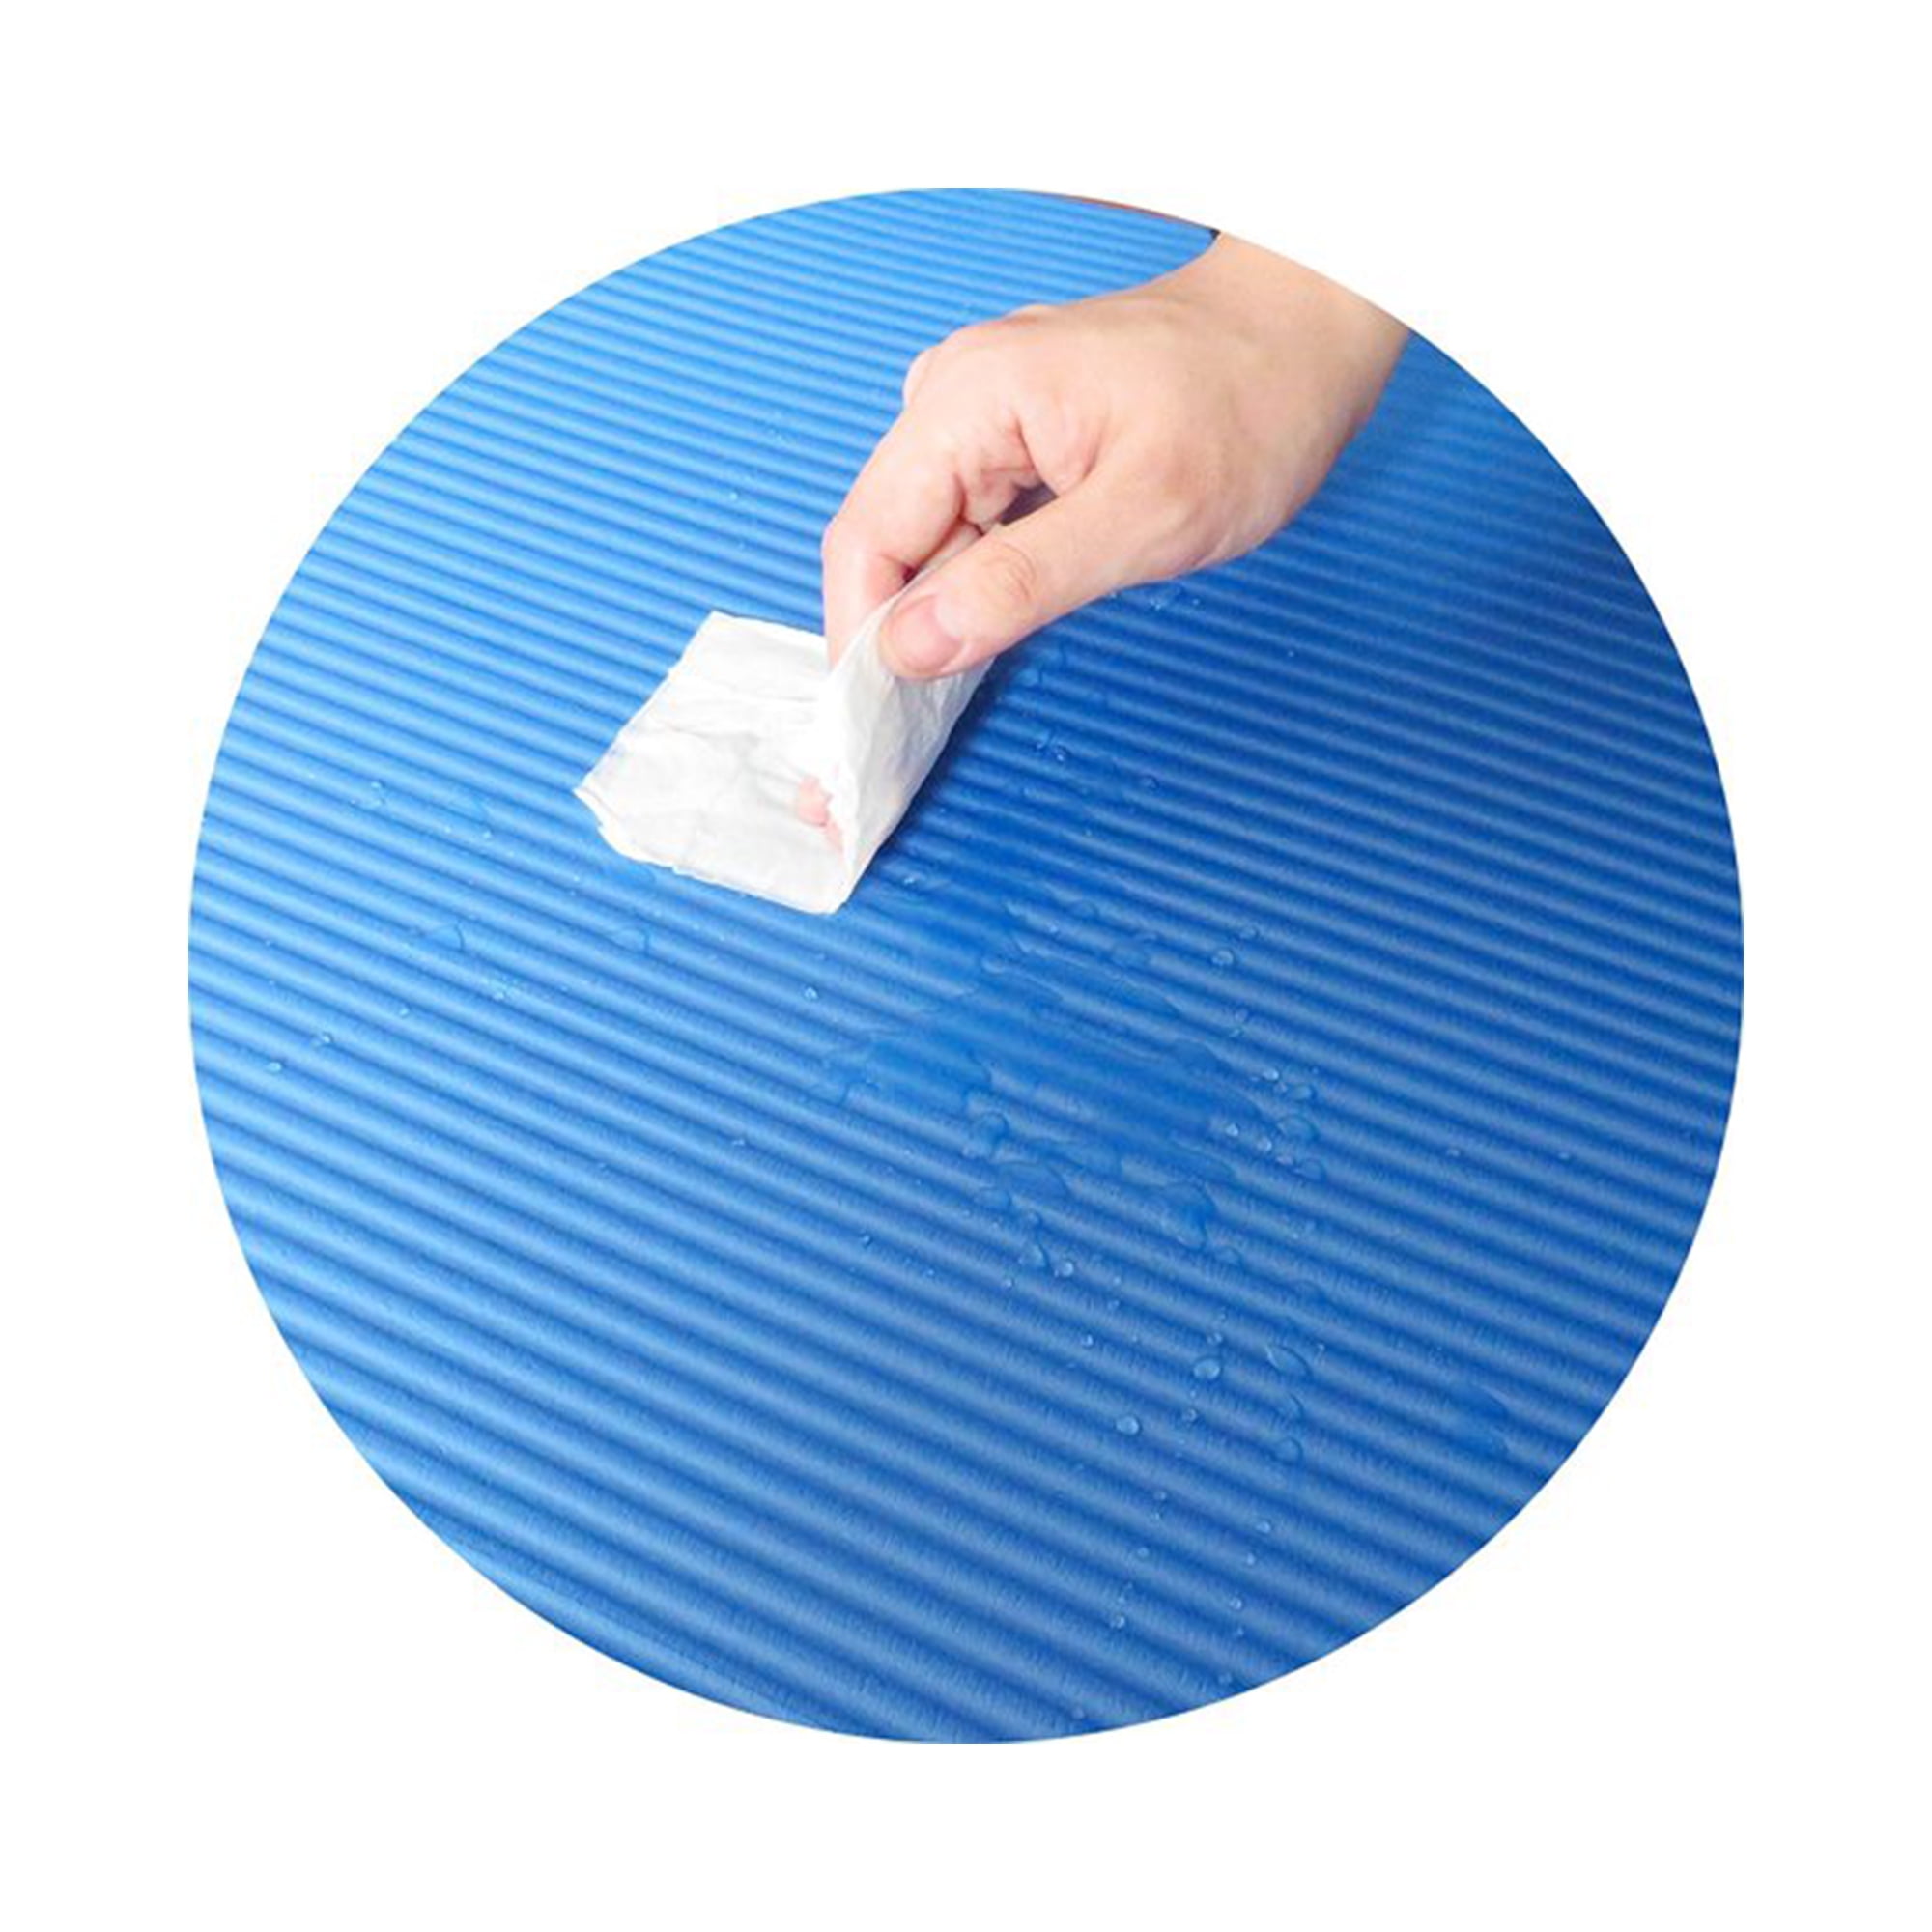 The OSU Buckeye Washable Yoga Mat – Bend